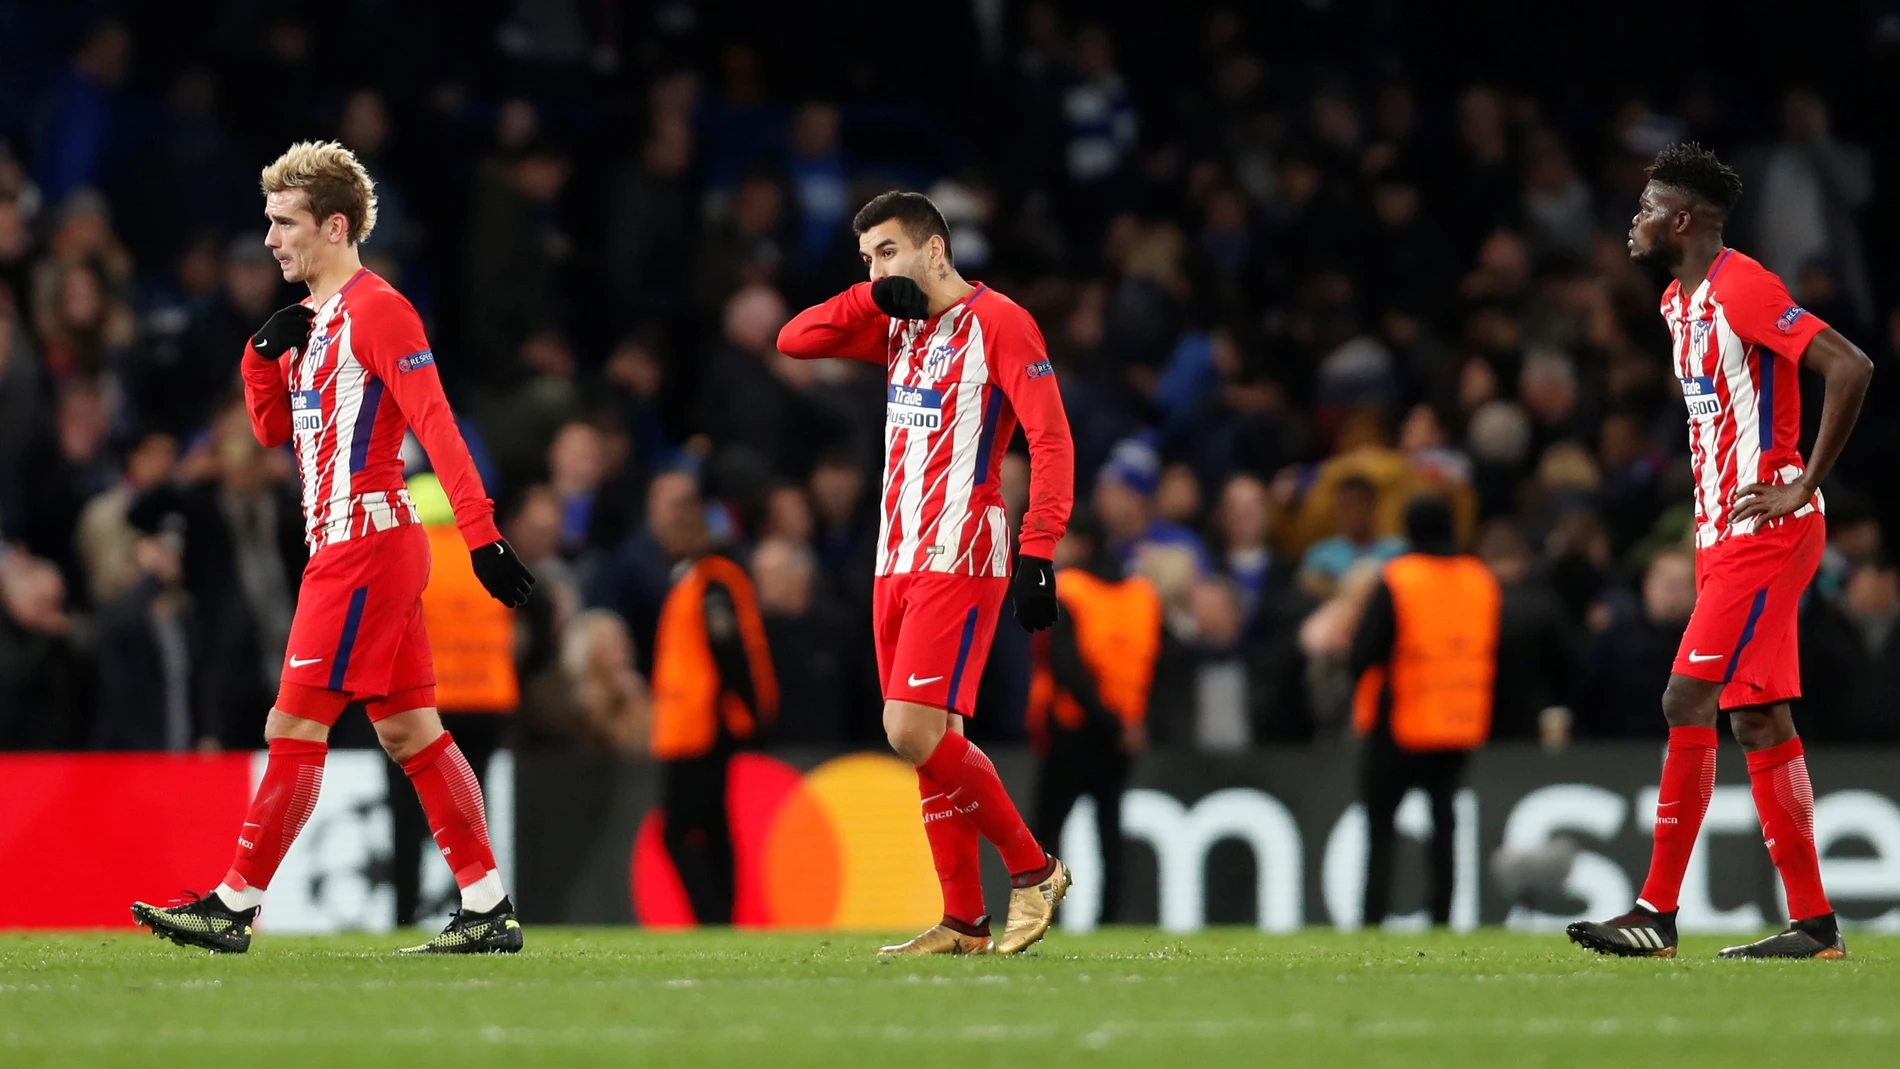 Los jugadores del Atlético de Madrid, tras caer eliminados en la Champions